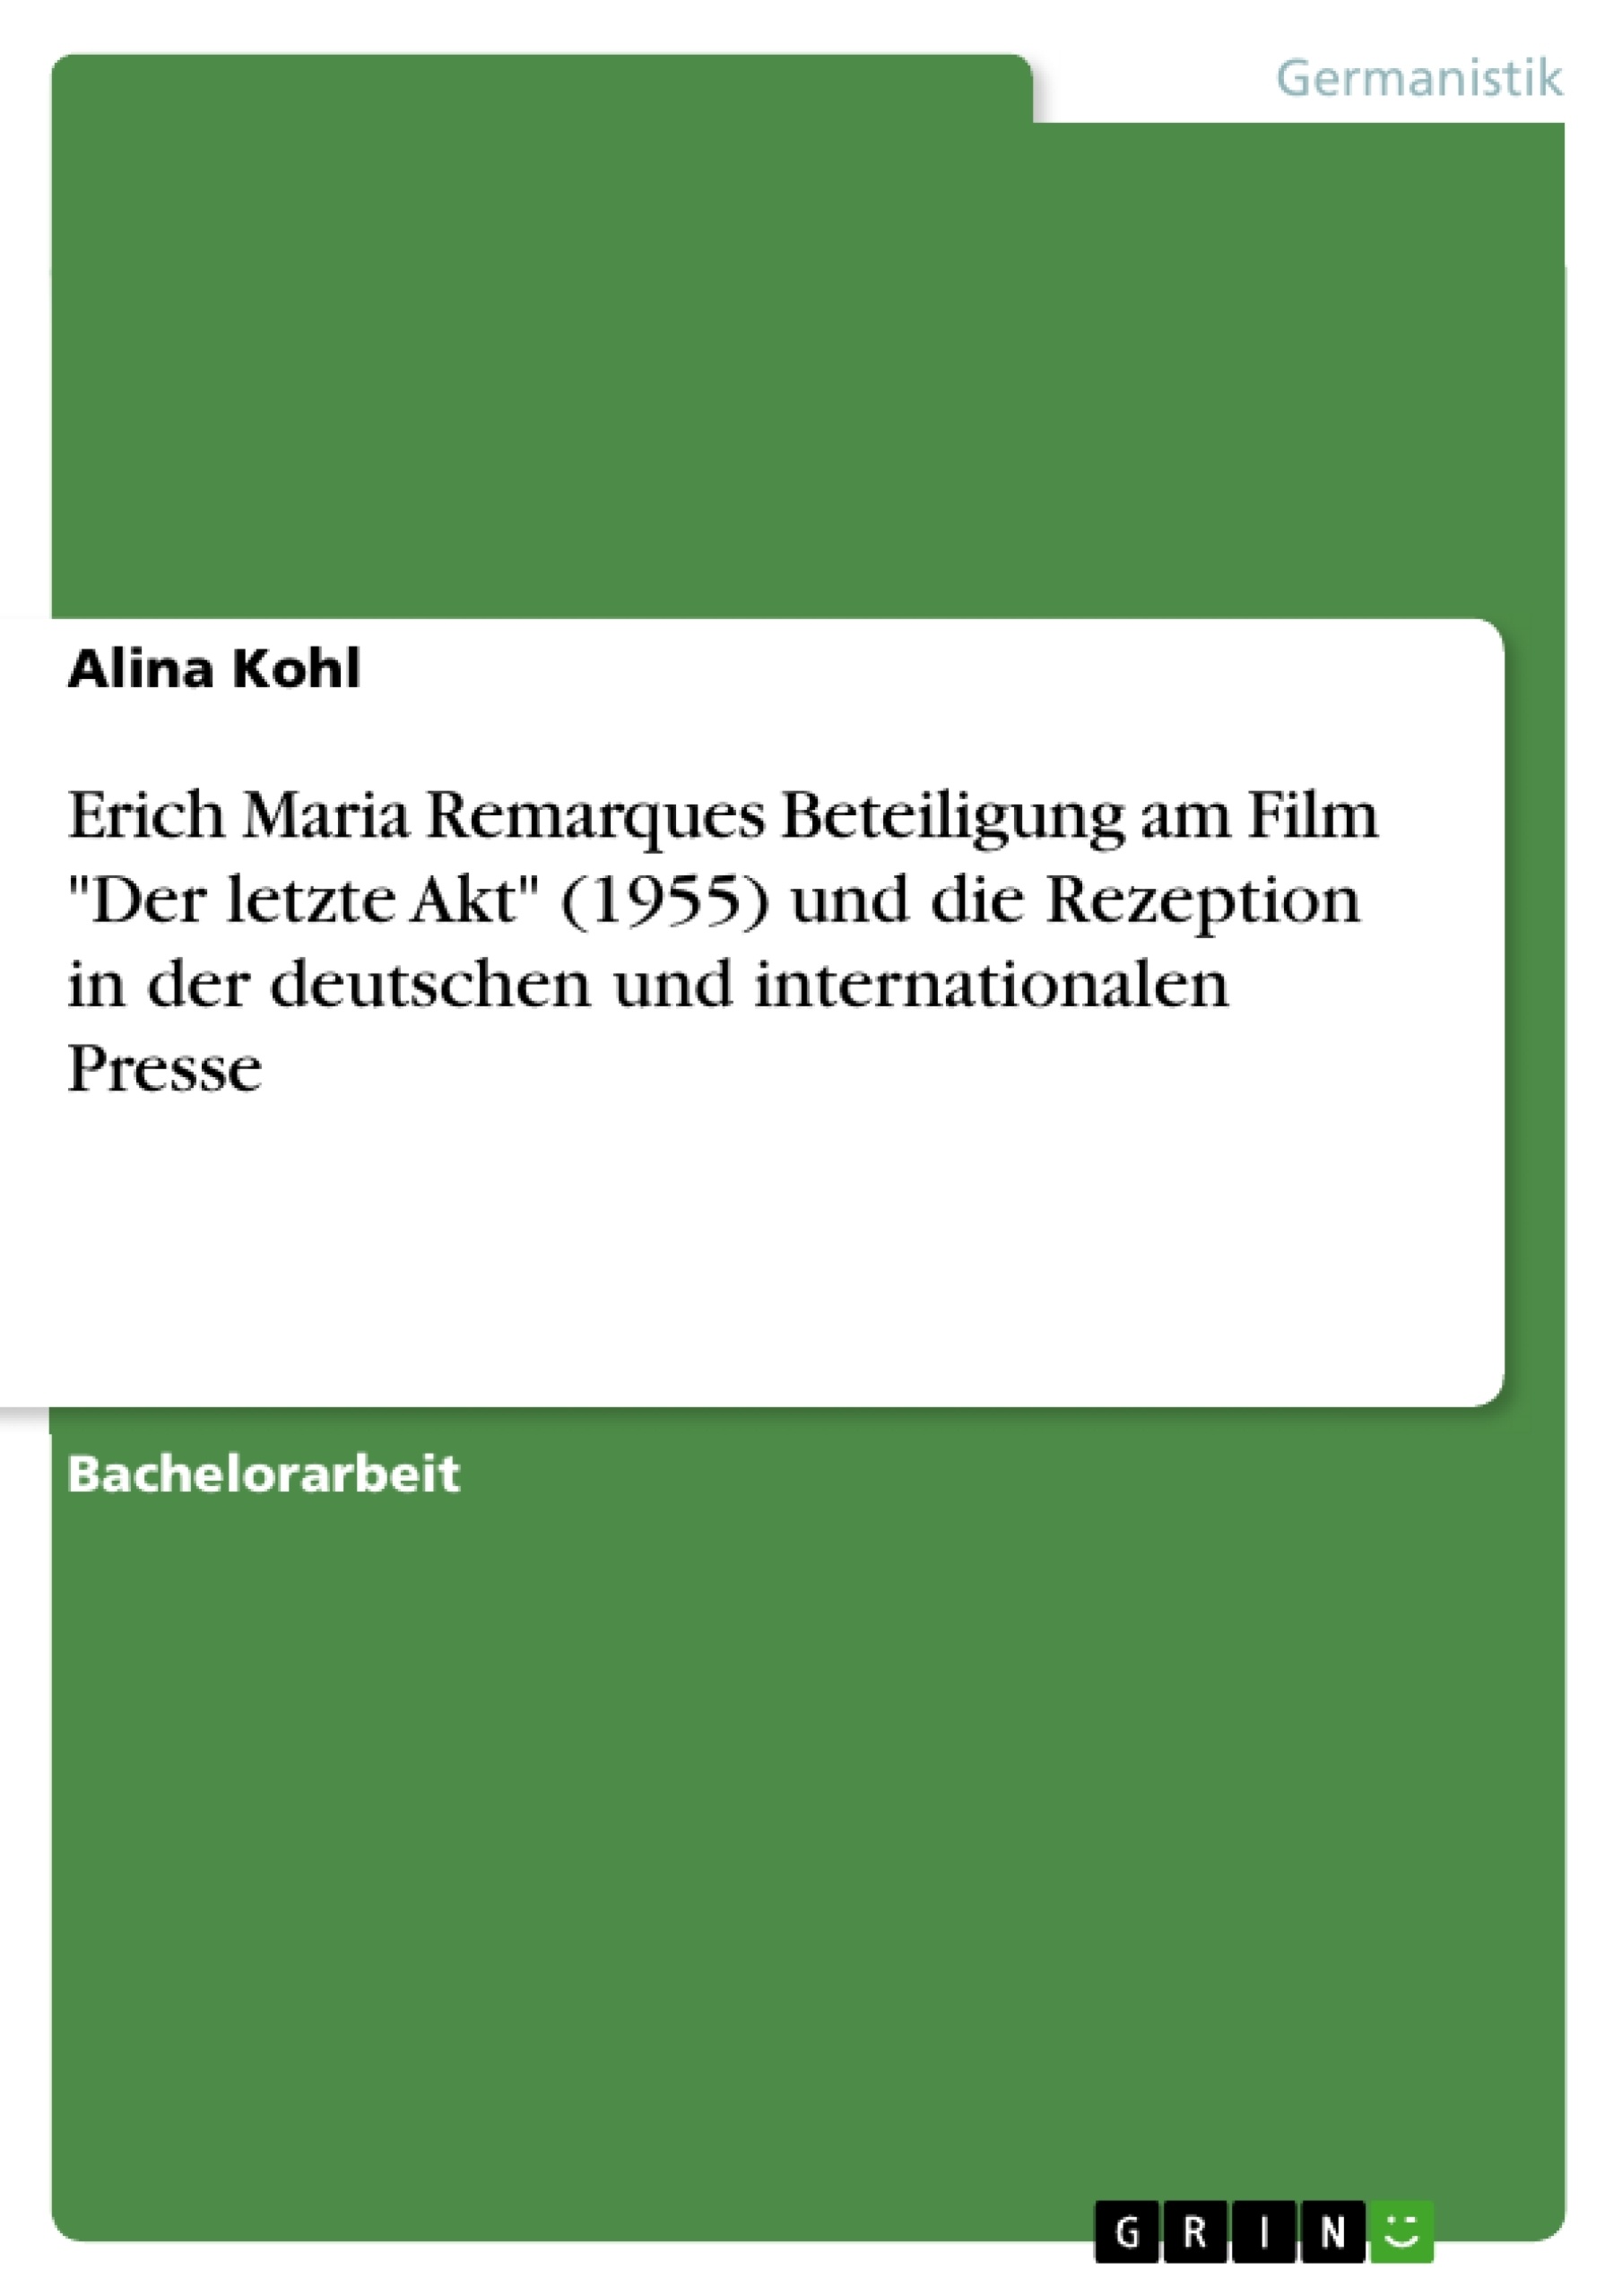 Title: Erich Maria Remarques Beteiligung am Film "Der letzte Akt" (1955) und die Rezeption in der deutschen und internationalen Presse